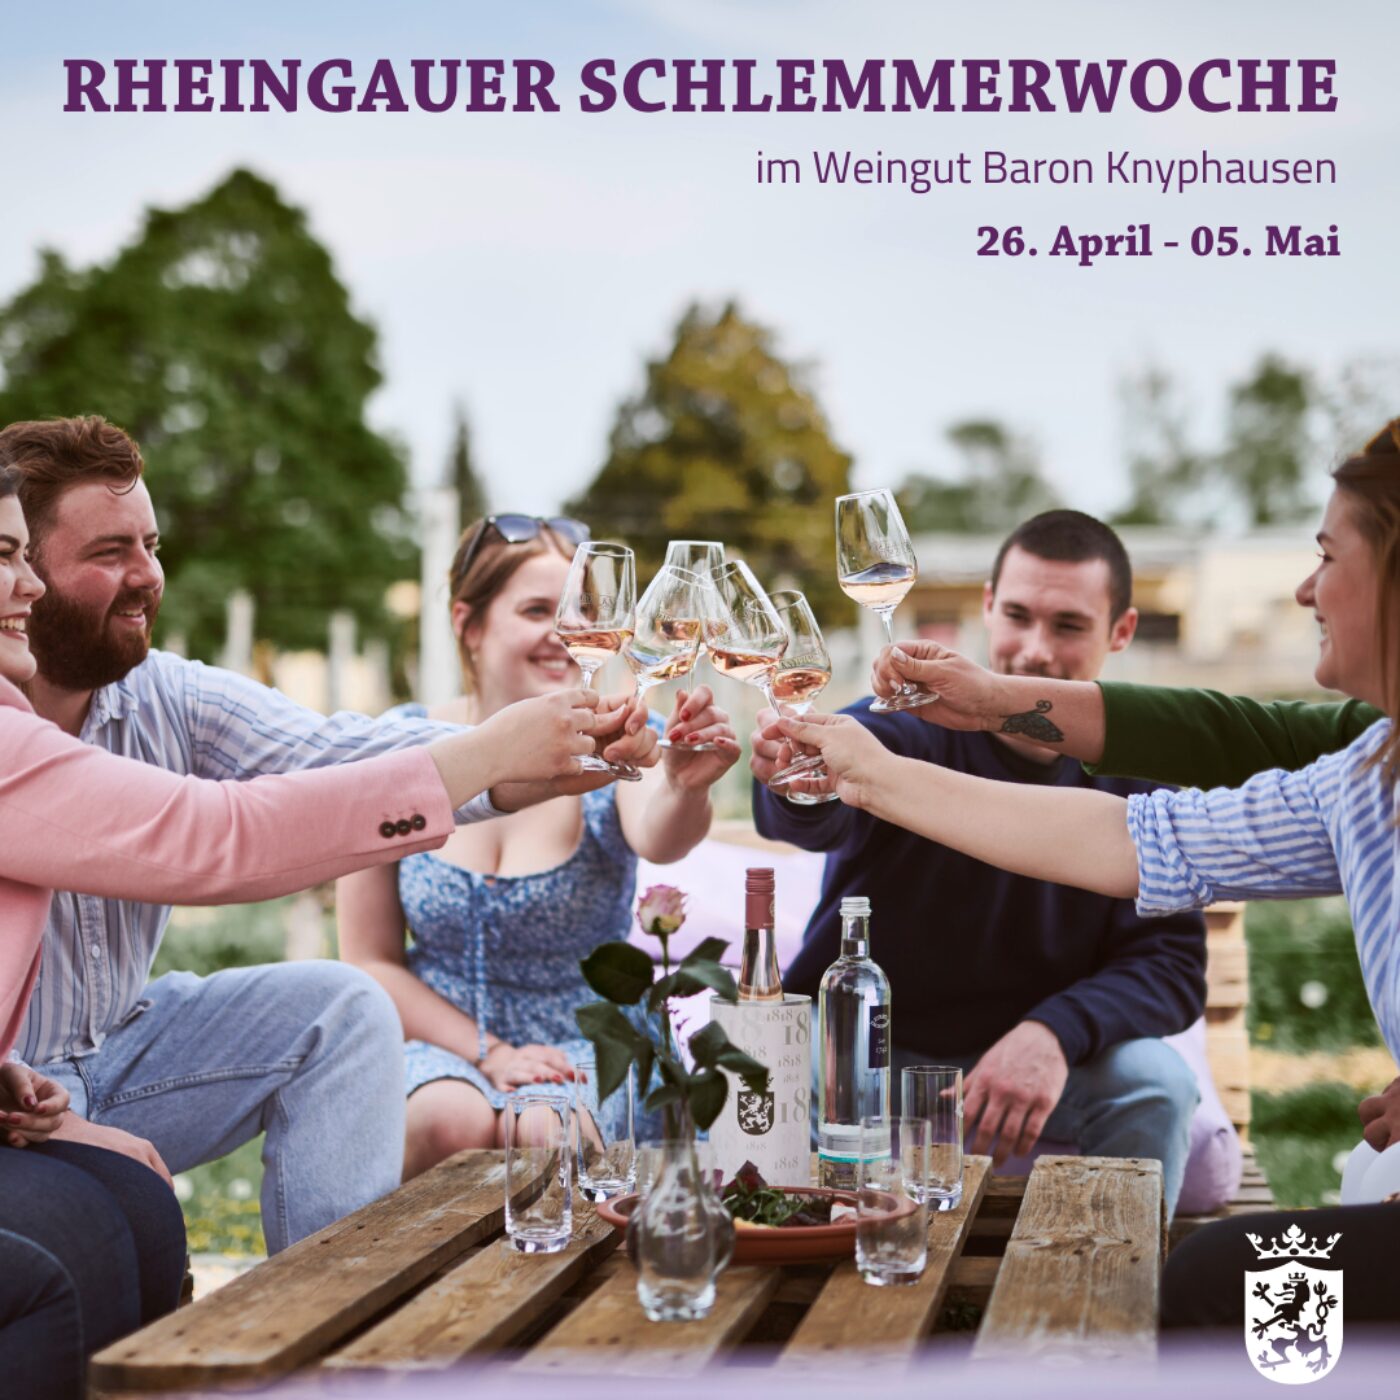 Rheingauer Schlemmerwoche"